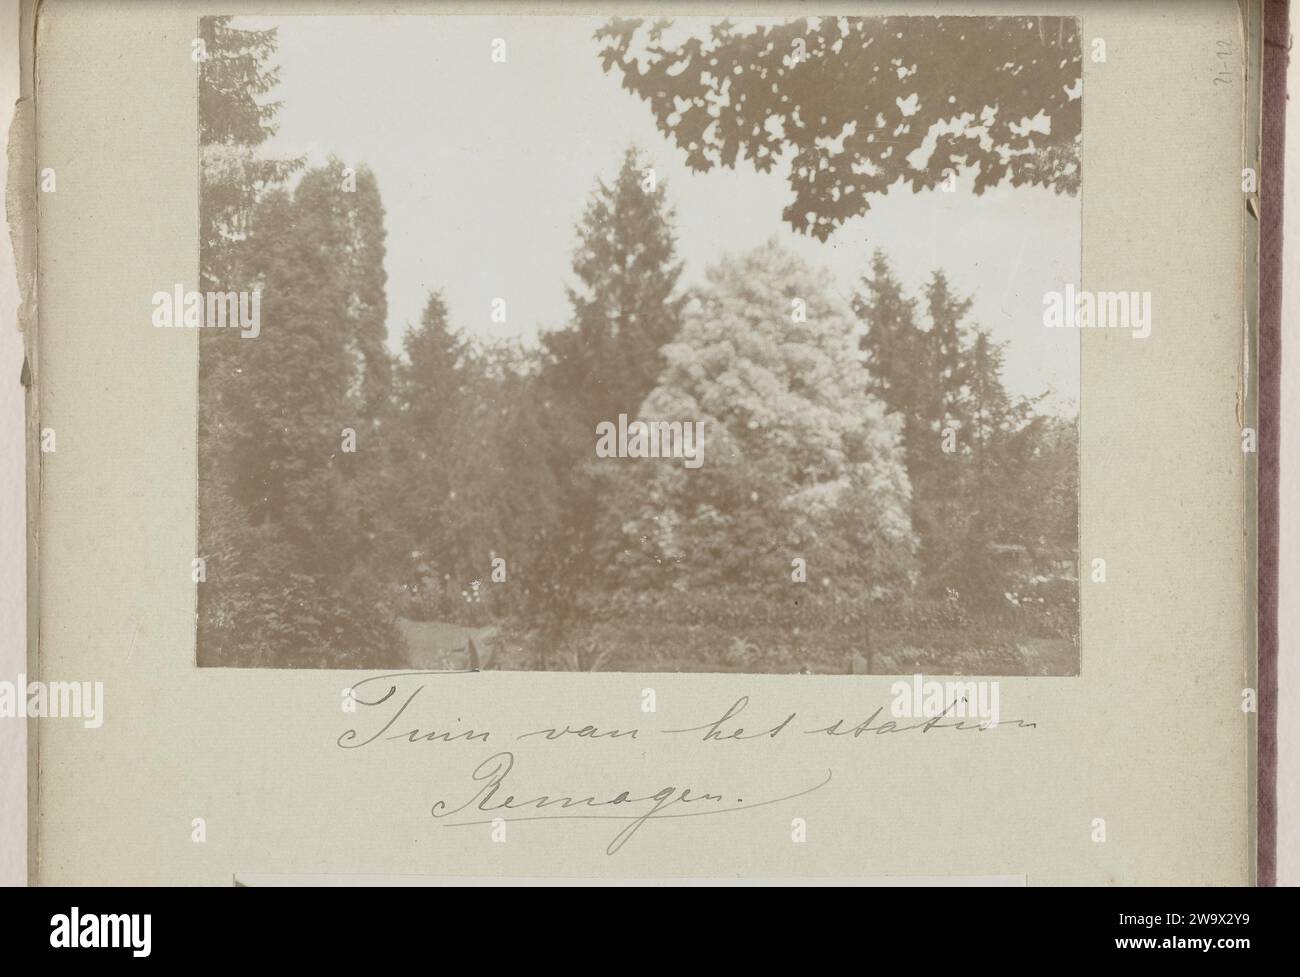 Giardino con alberi alla stazione di Remagen, c. 1895 - c. 1905 Fotografia questa foto fa parte di un album. Remagen baryta alberi di carta Remagen Foto Stock